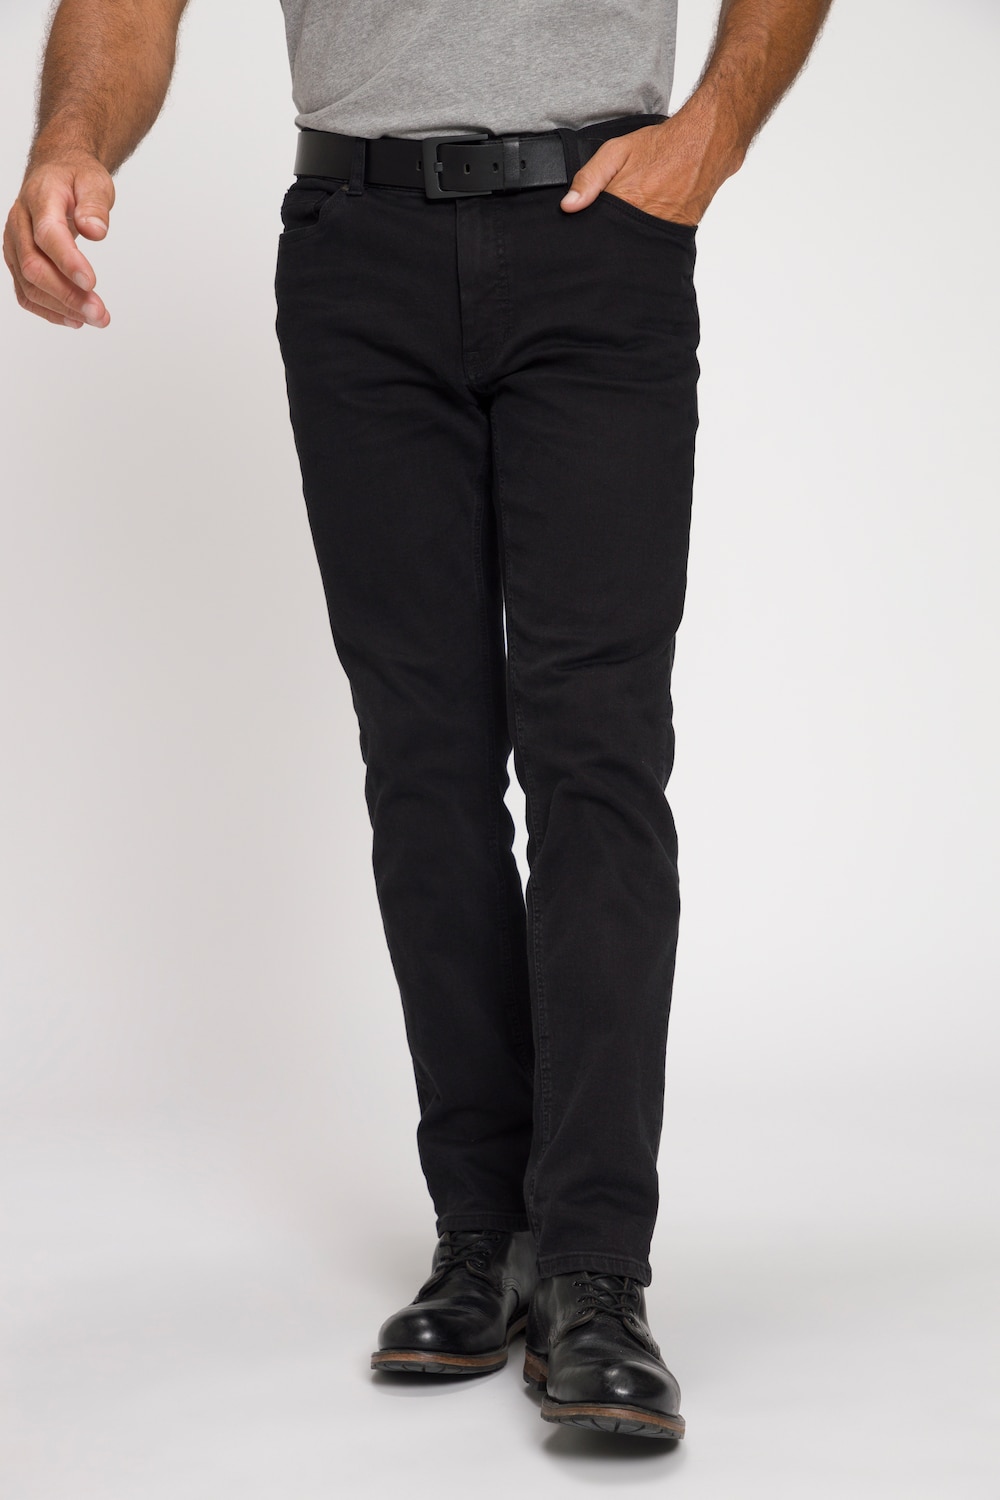 Große Größen Jeans, Herren, schwarz, Größe: 54, Baumwolle, JP1880 von JP1880